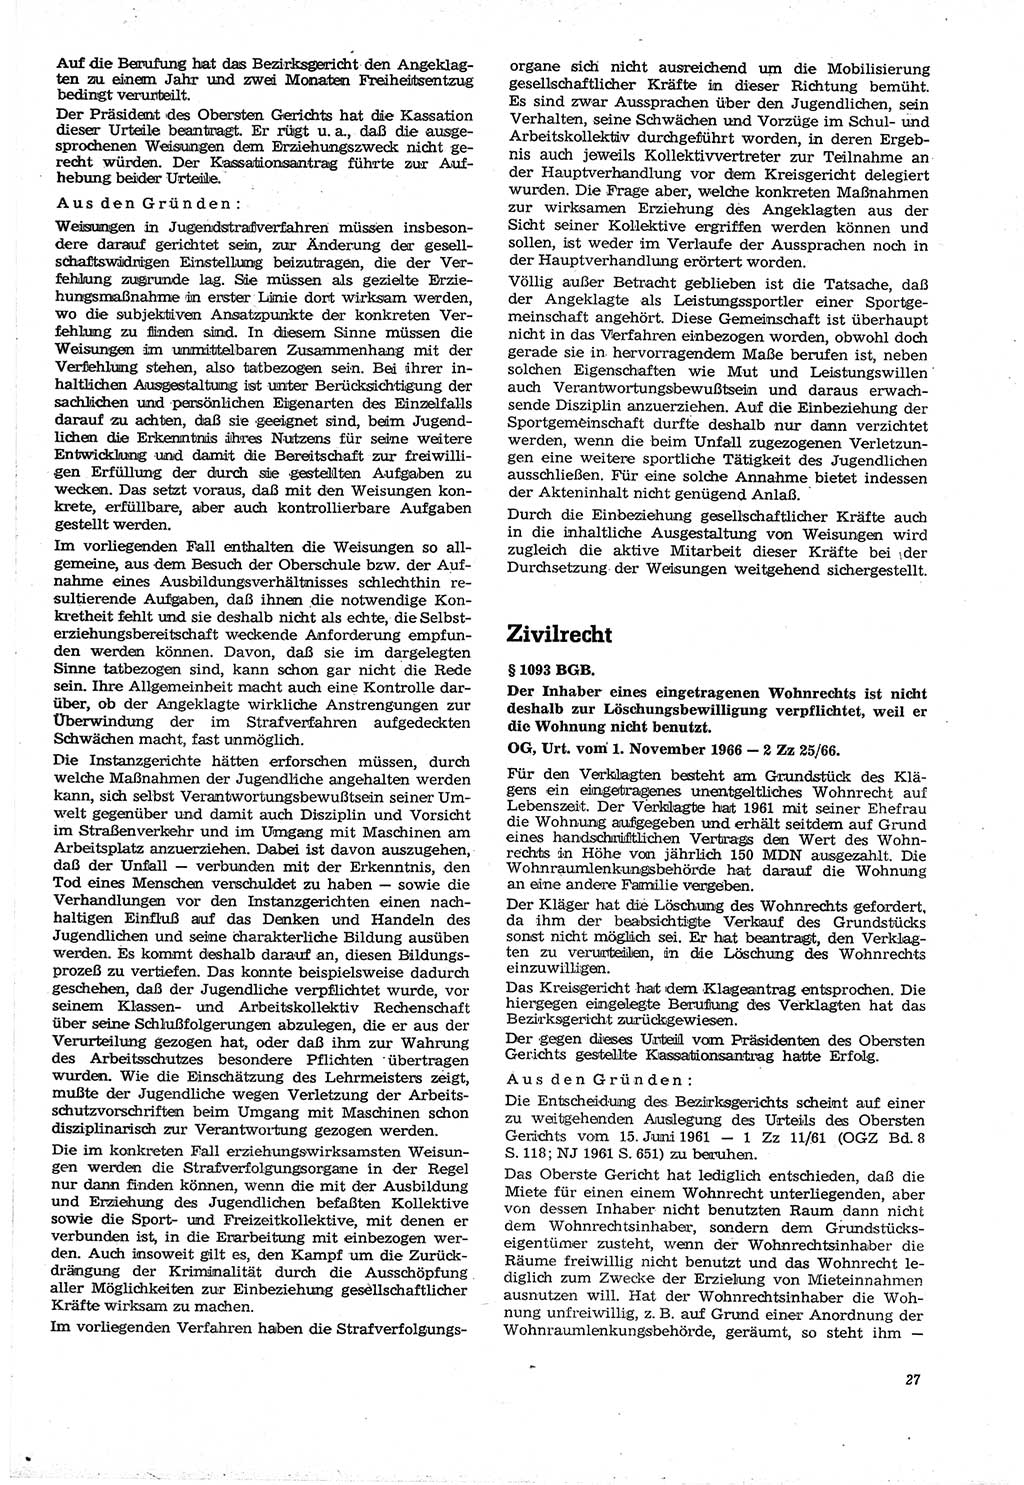 Neue Justiz (NJ), Zeitschrift für Recht und Rechtswissenschaft [Deutsche Demokratische Republik (DDR)], 21. Jahrgang 1967, Seite 27 (NJ DDR 1967, S. 27)